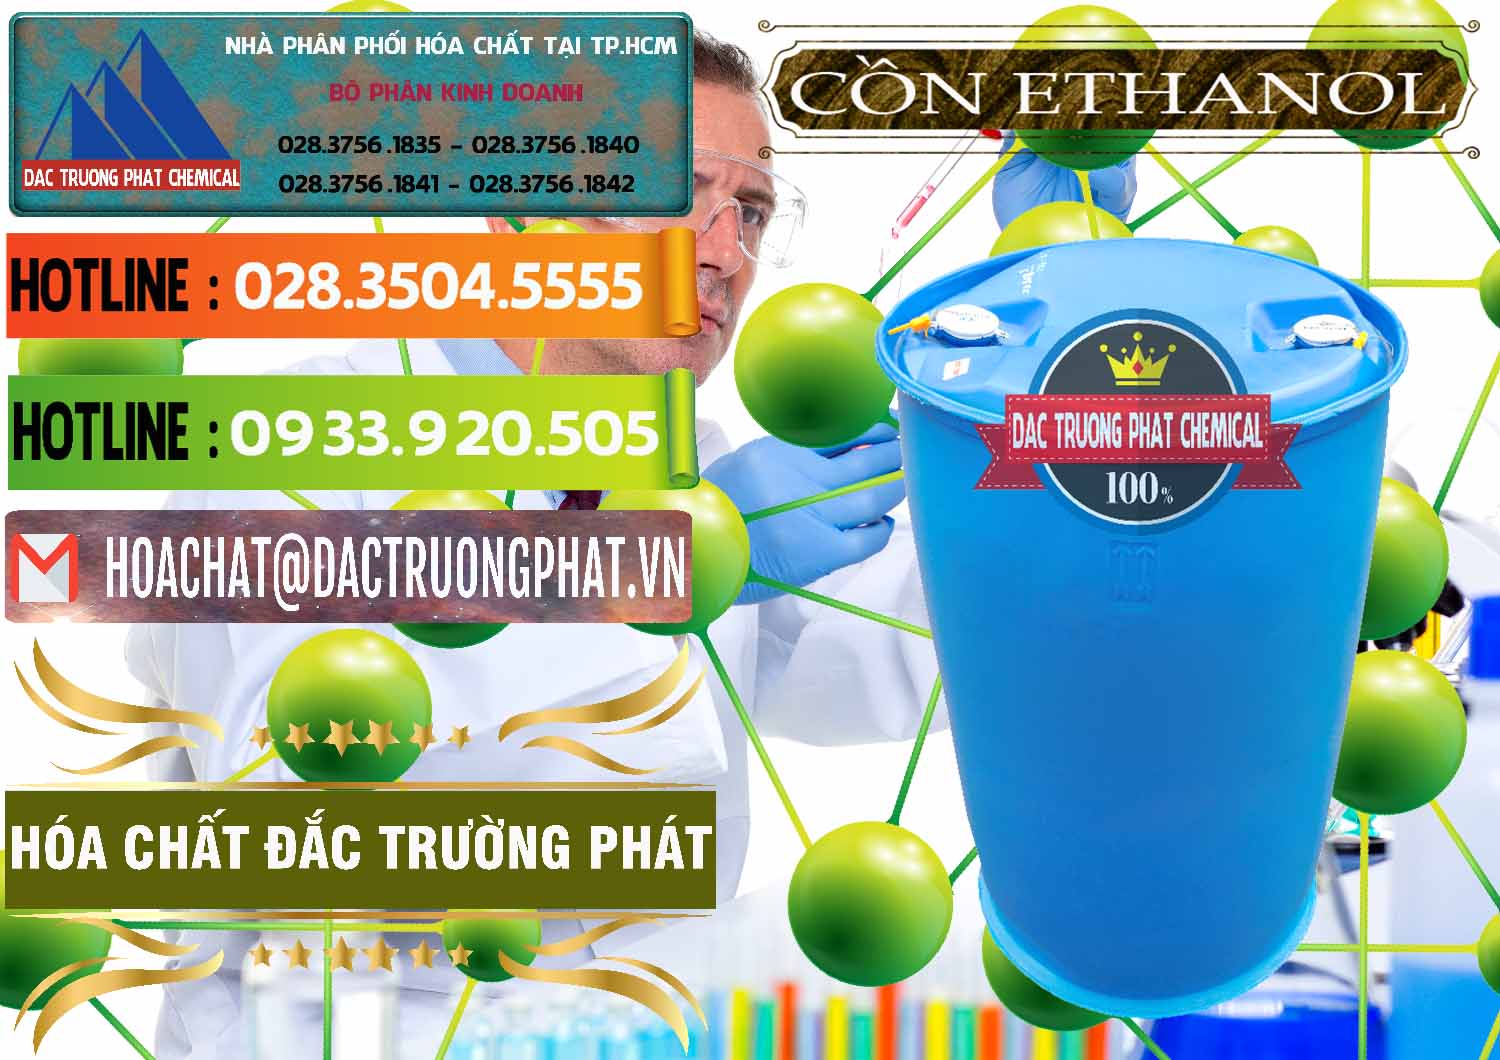 Đơn vị chuyên kinh doanh - bán Cồn Ethanol - C2H5OH Thực Phẩm Food Grade Việt Nam - 0330 - Nhà cung cấp _ phân phối hóa chất tại TP.HCM - cungcaphoachat.com.vn